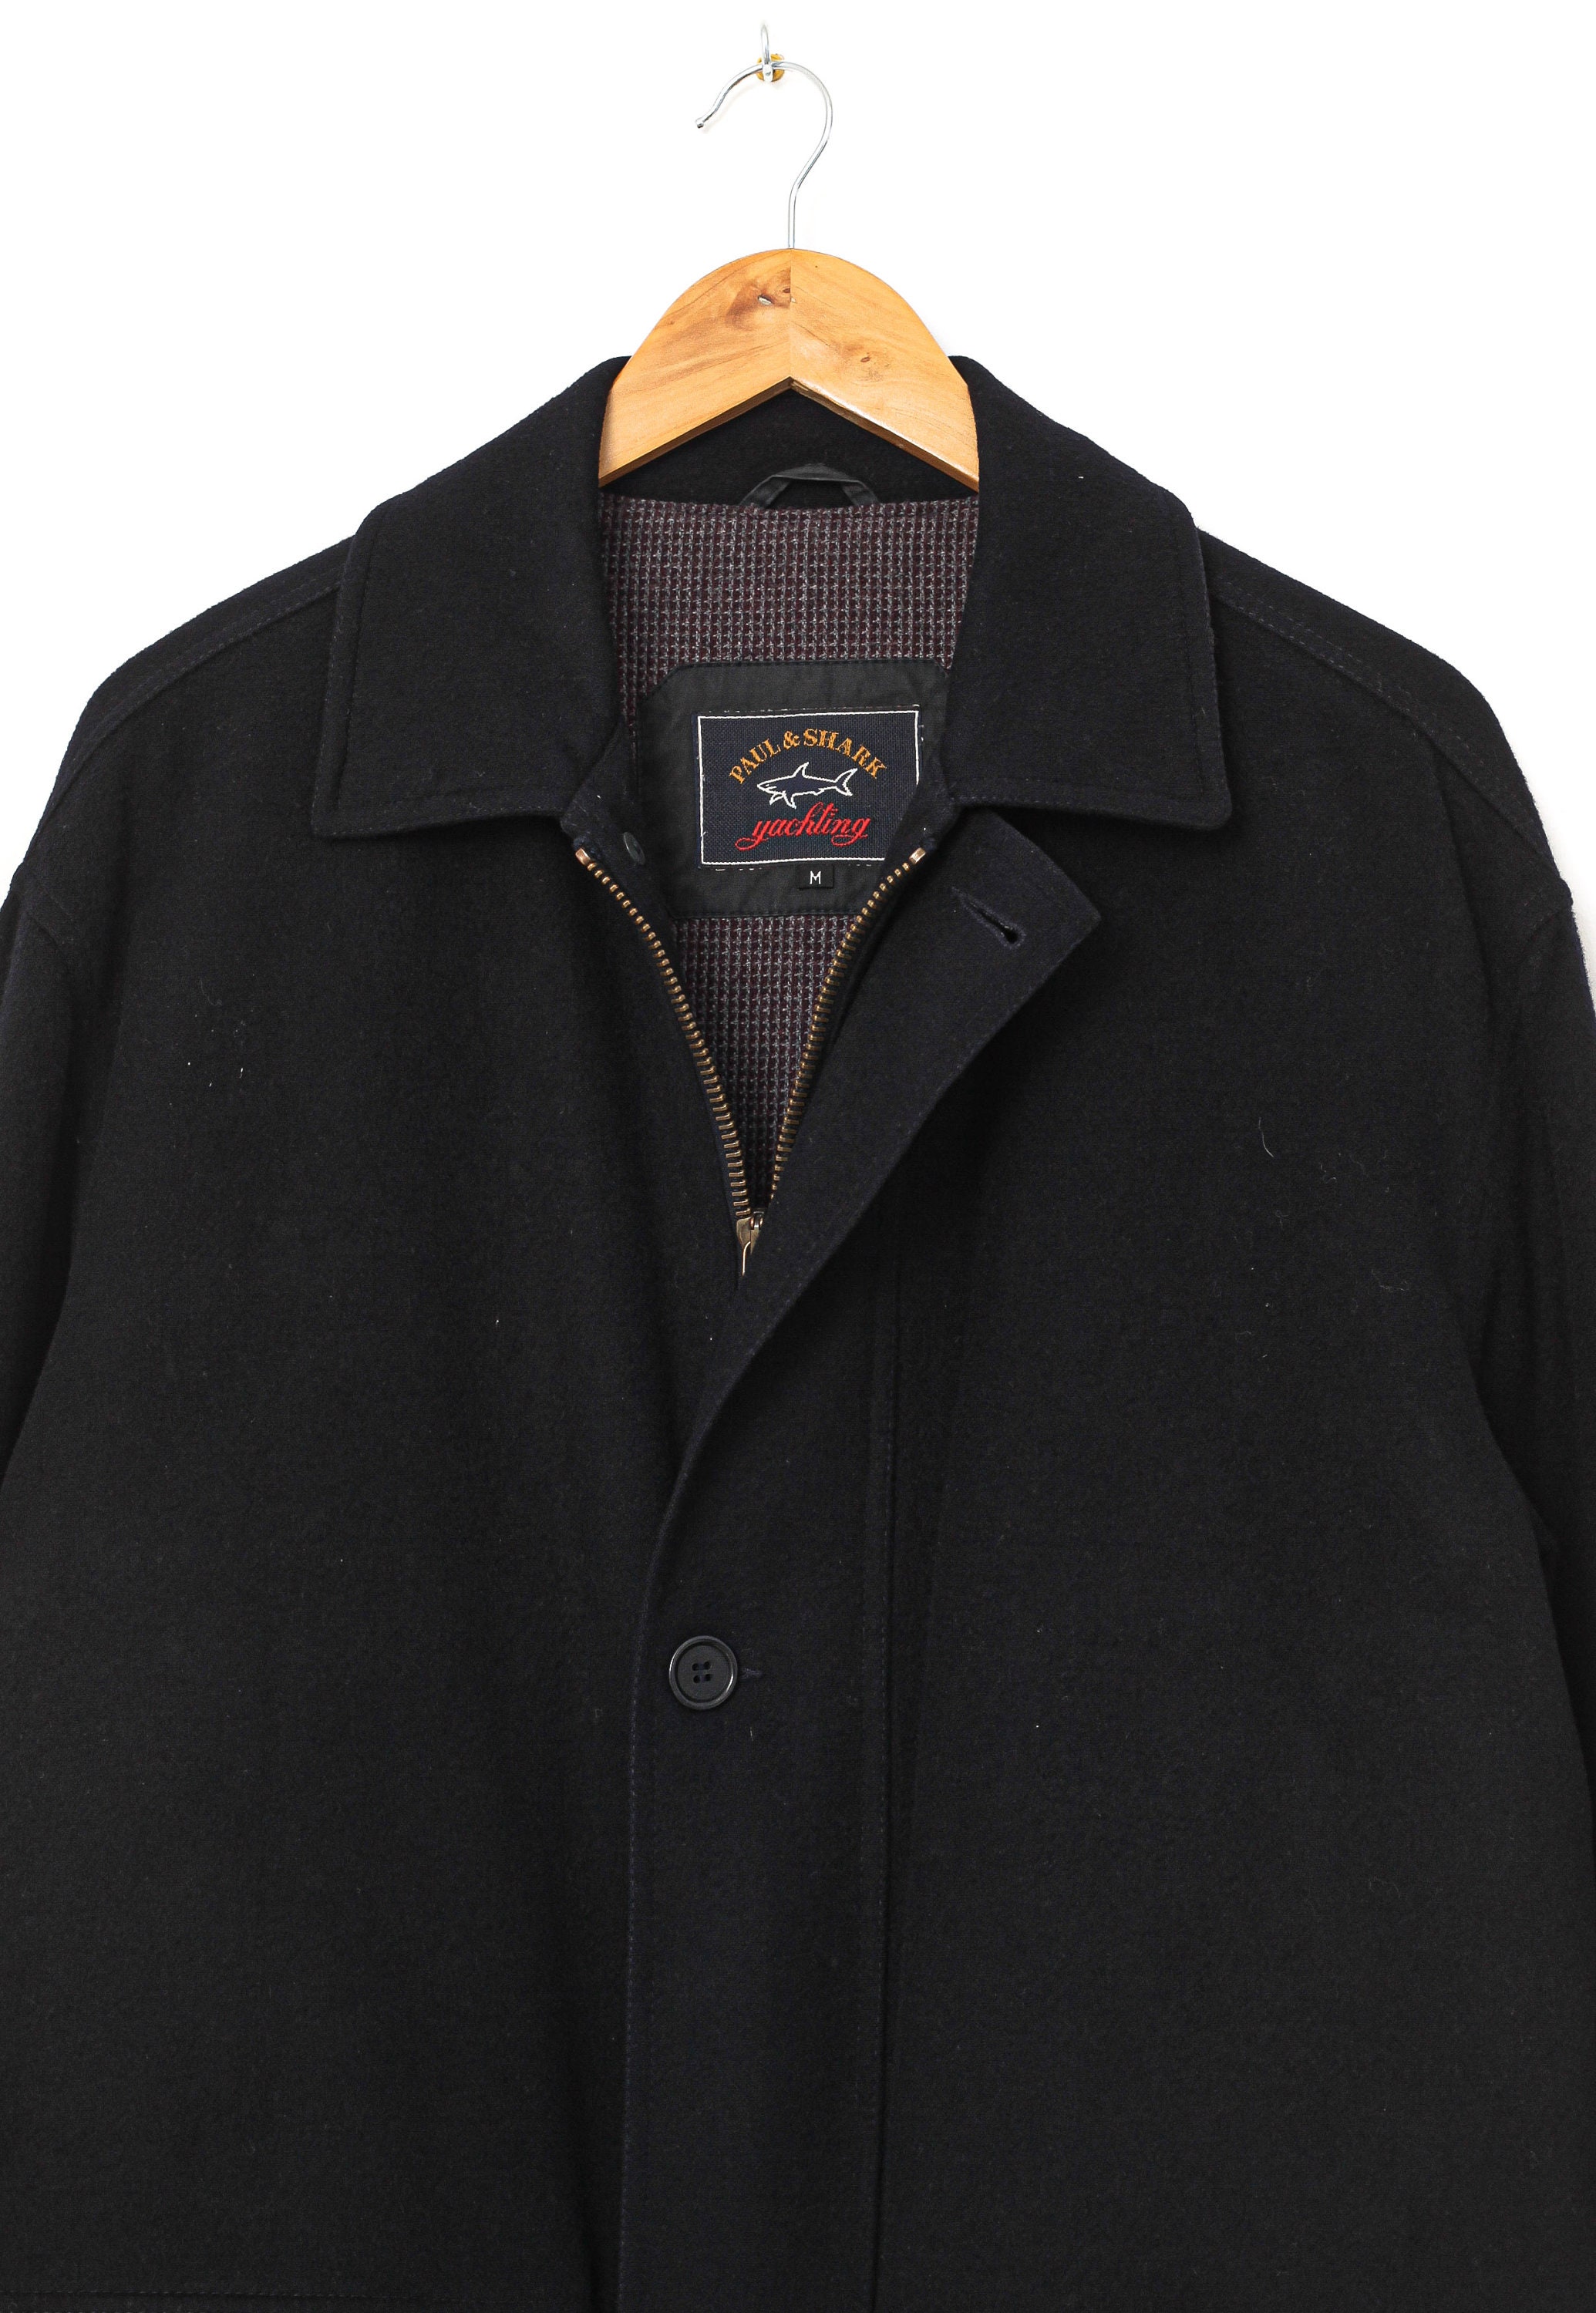 Mens PAUL & SHARK Coat Jacket Wool Alpaca Black Size M | Etsy